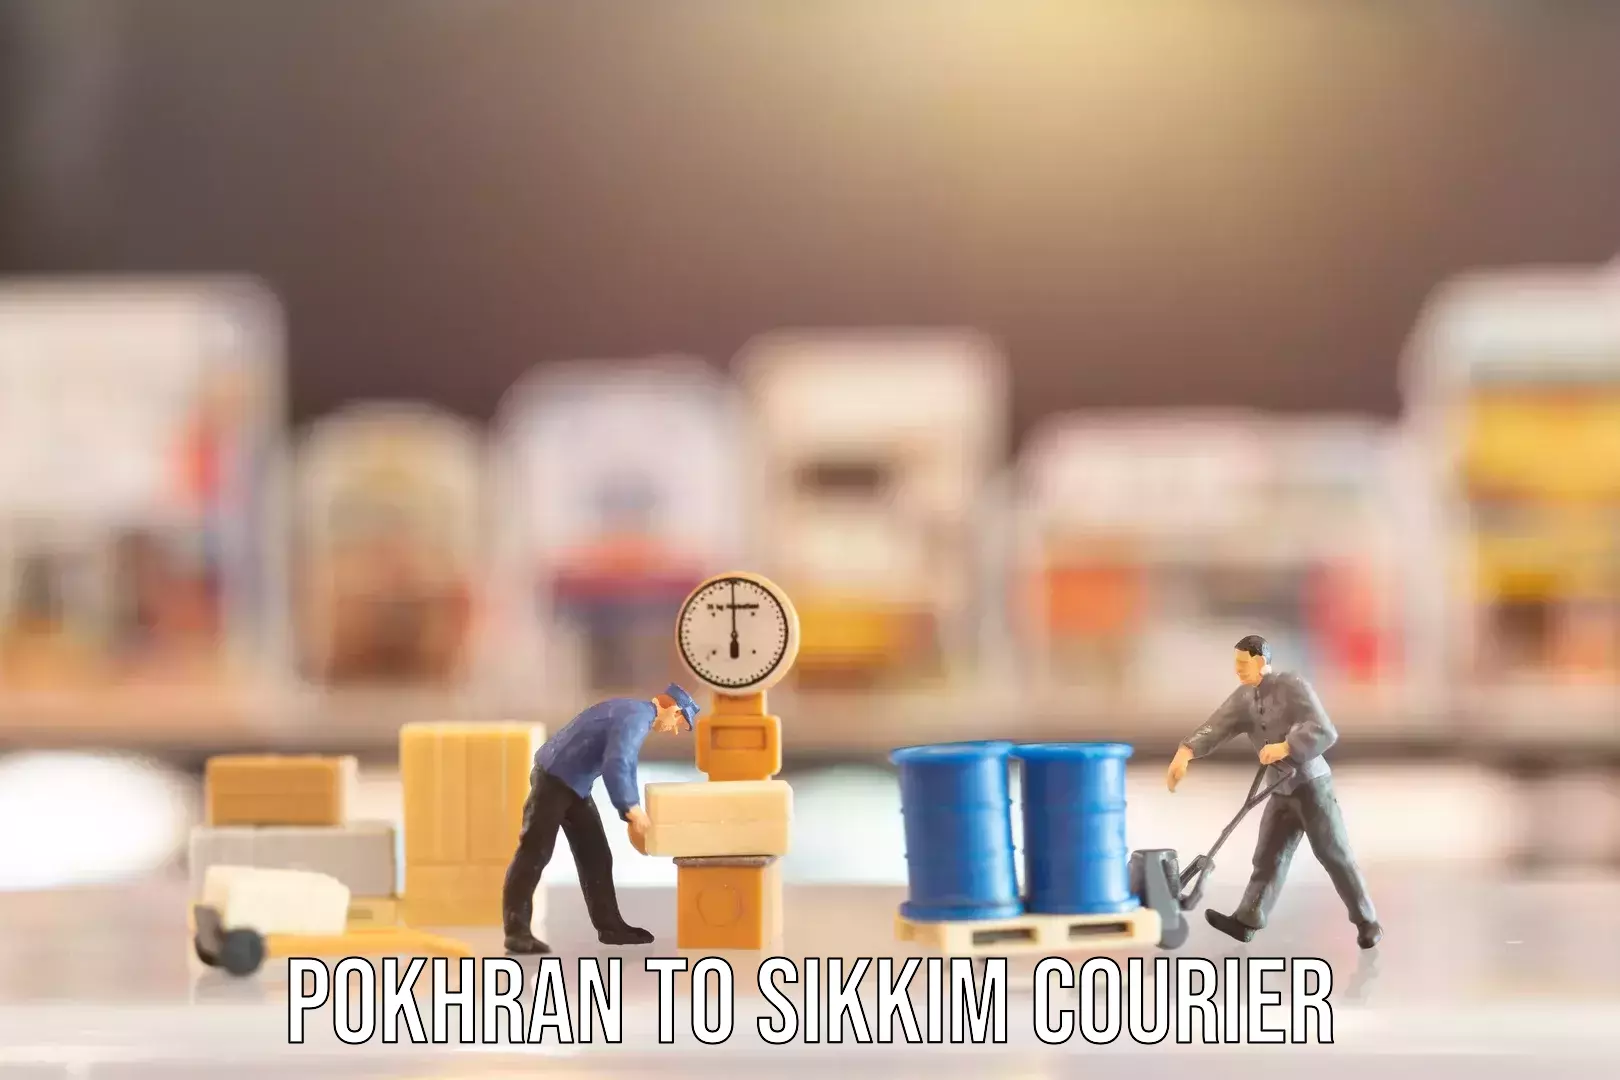 Luggage shipment specialists Pokhran to Sikkim